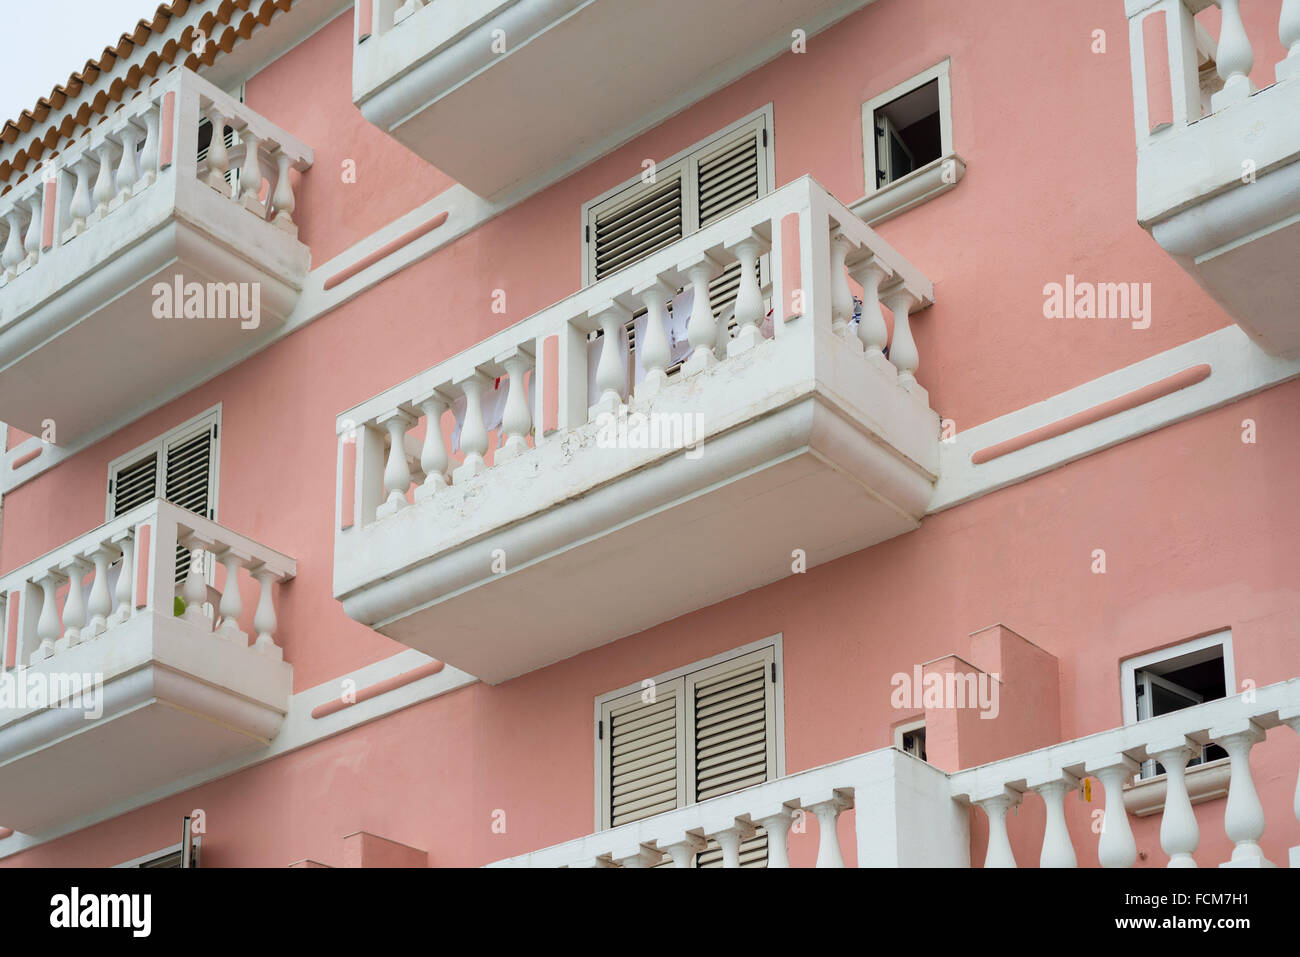 Weißen Balkonen und Jalousien auf der lachsfarbenen Fassade eines mediterranen Hauses in der Cilento-Region im Süden Italiens Stockfoto